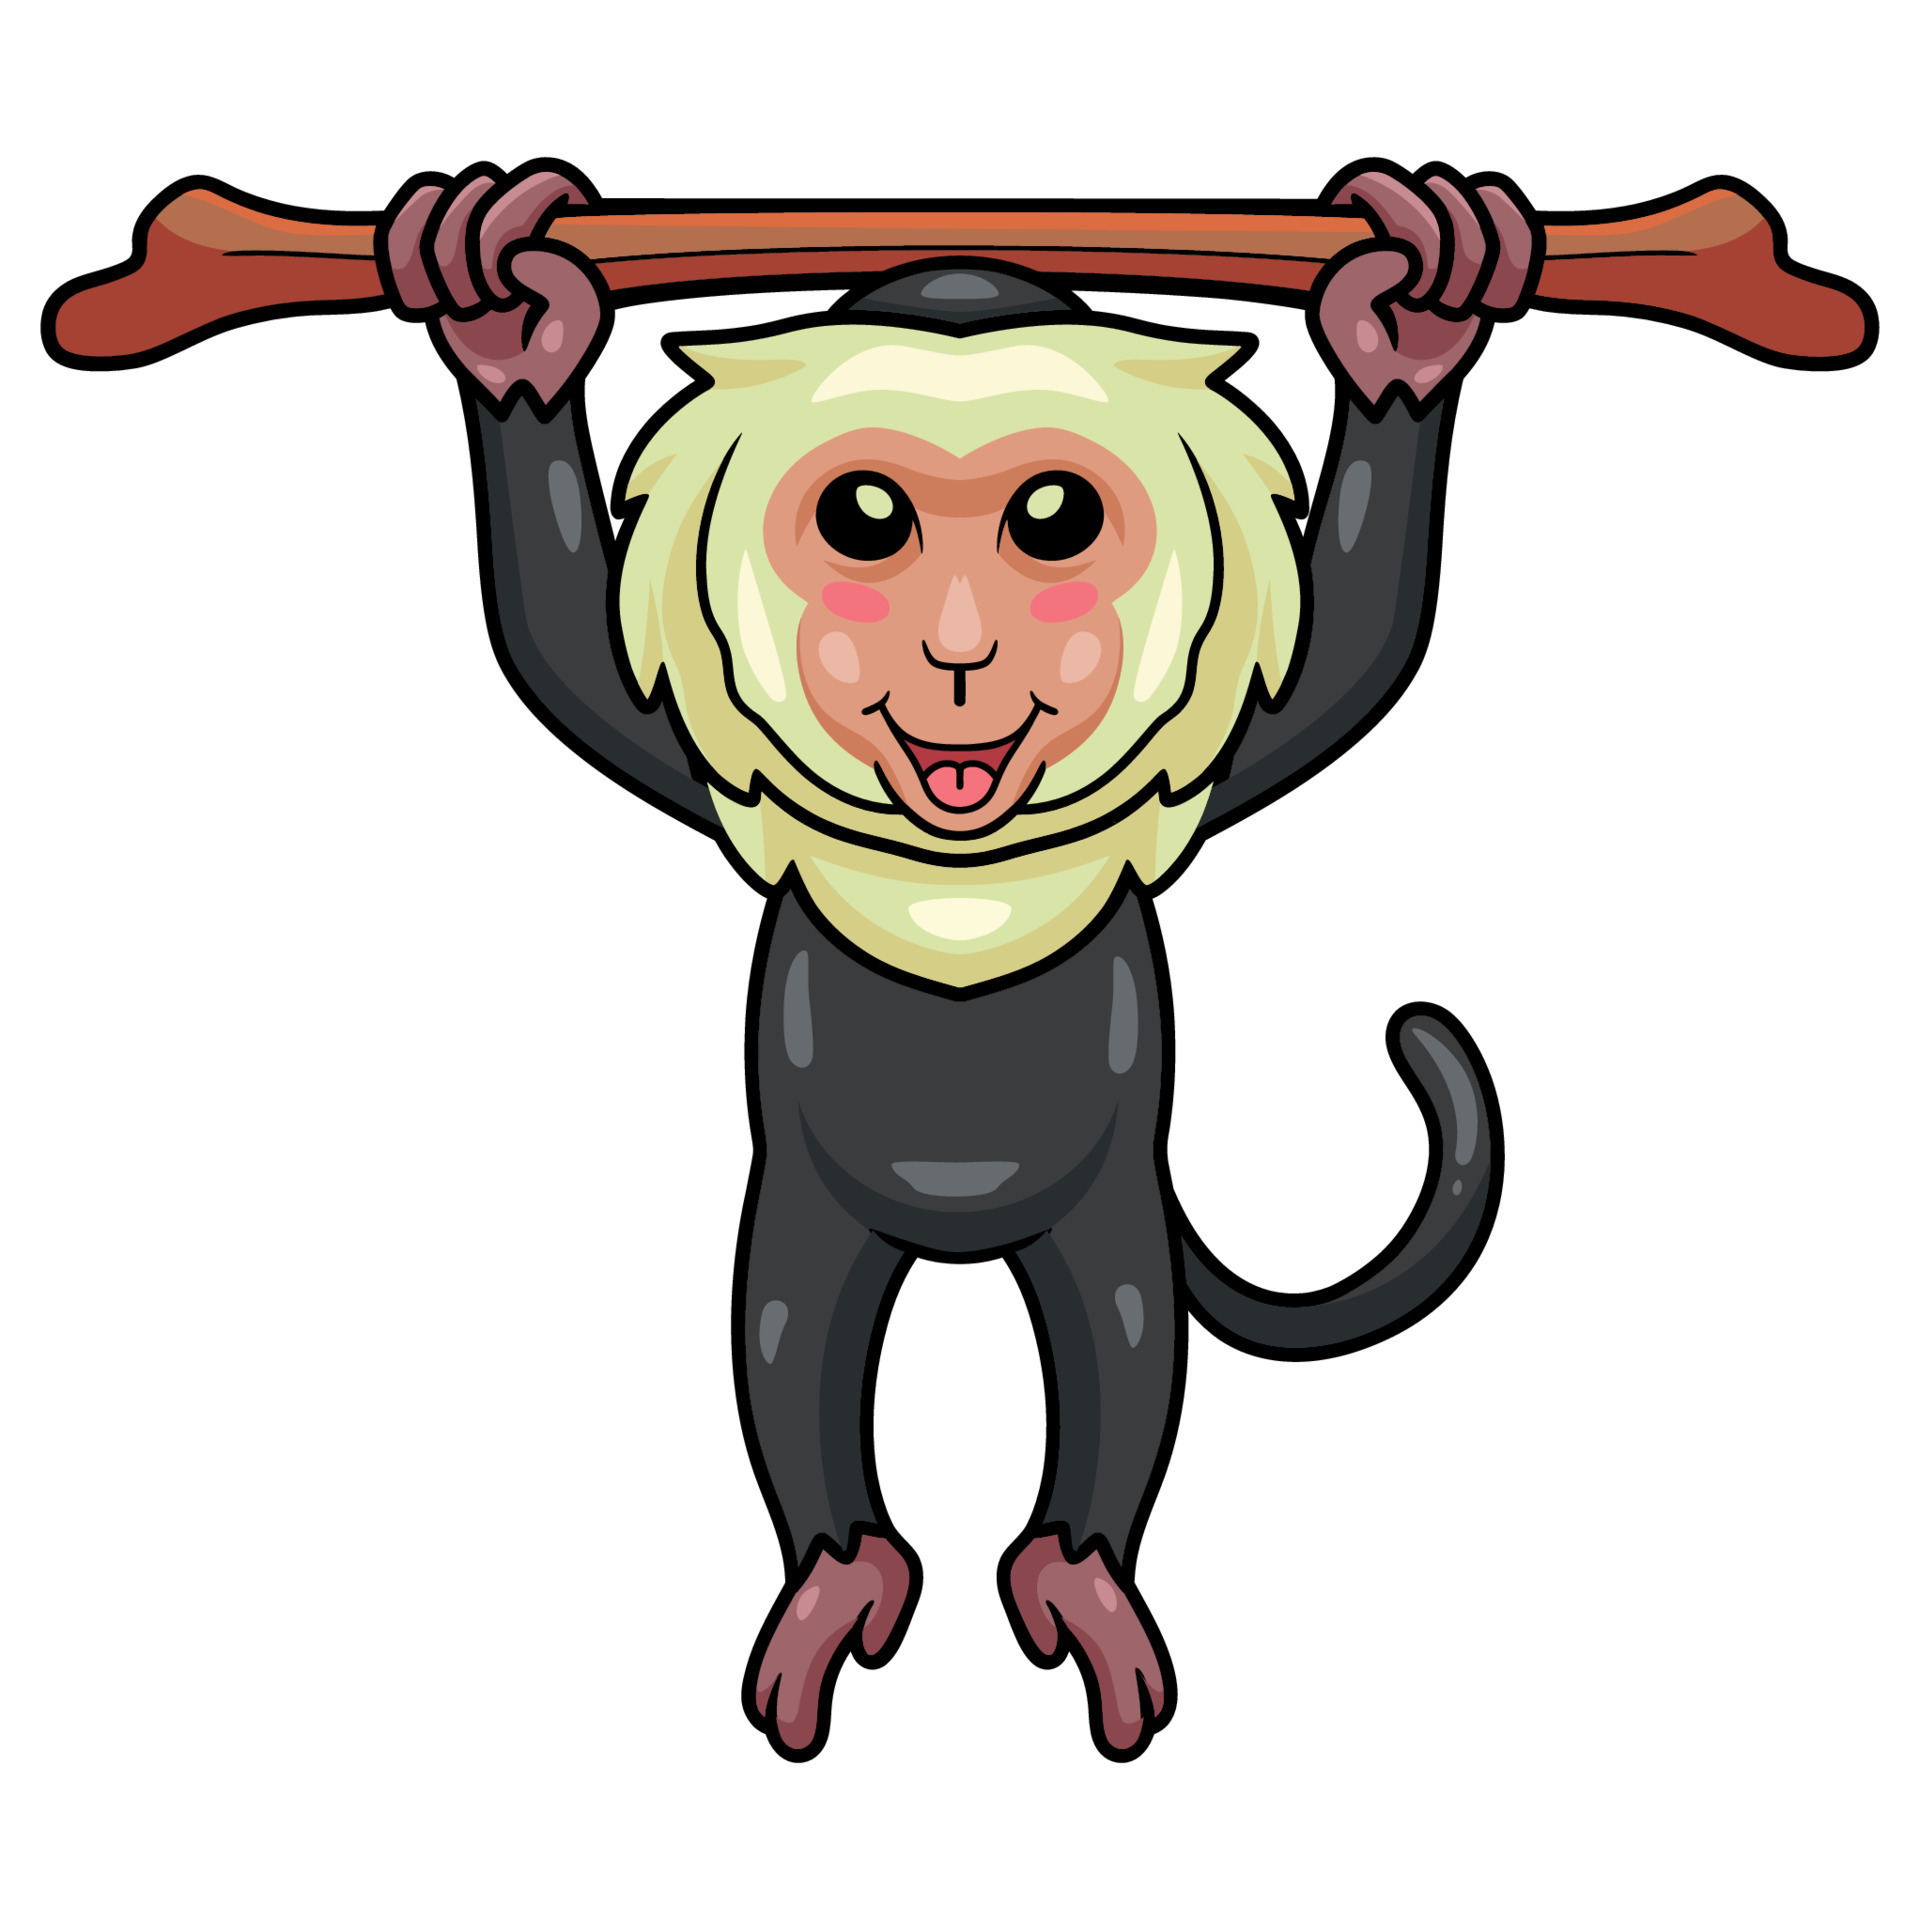 bonitinho macaco-prego desenho animado árvore pendurada 14328833 Vetor no  Vecteezy